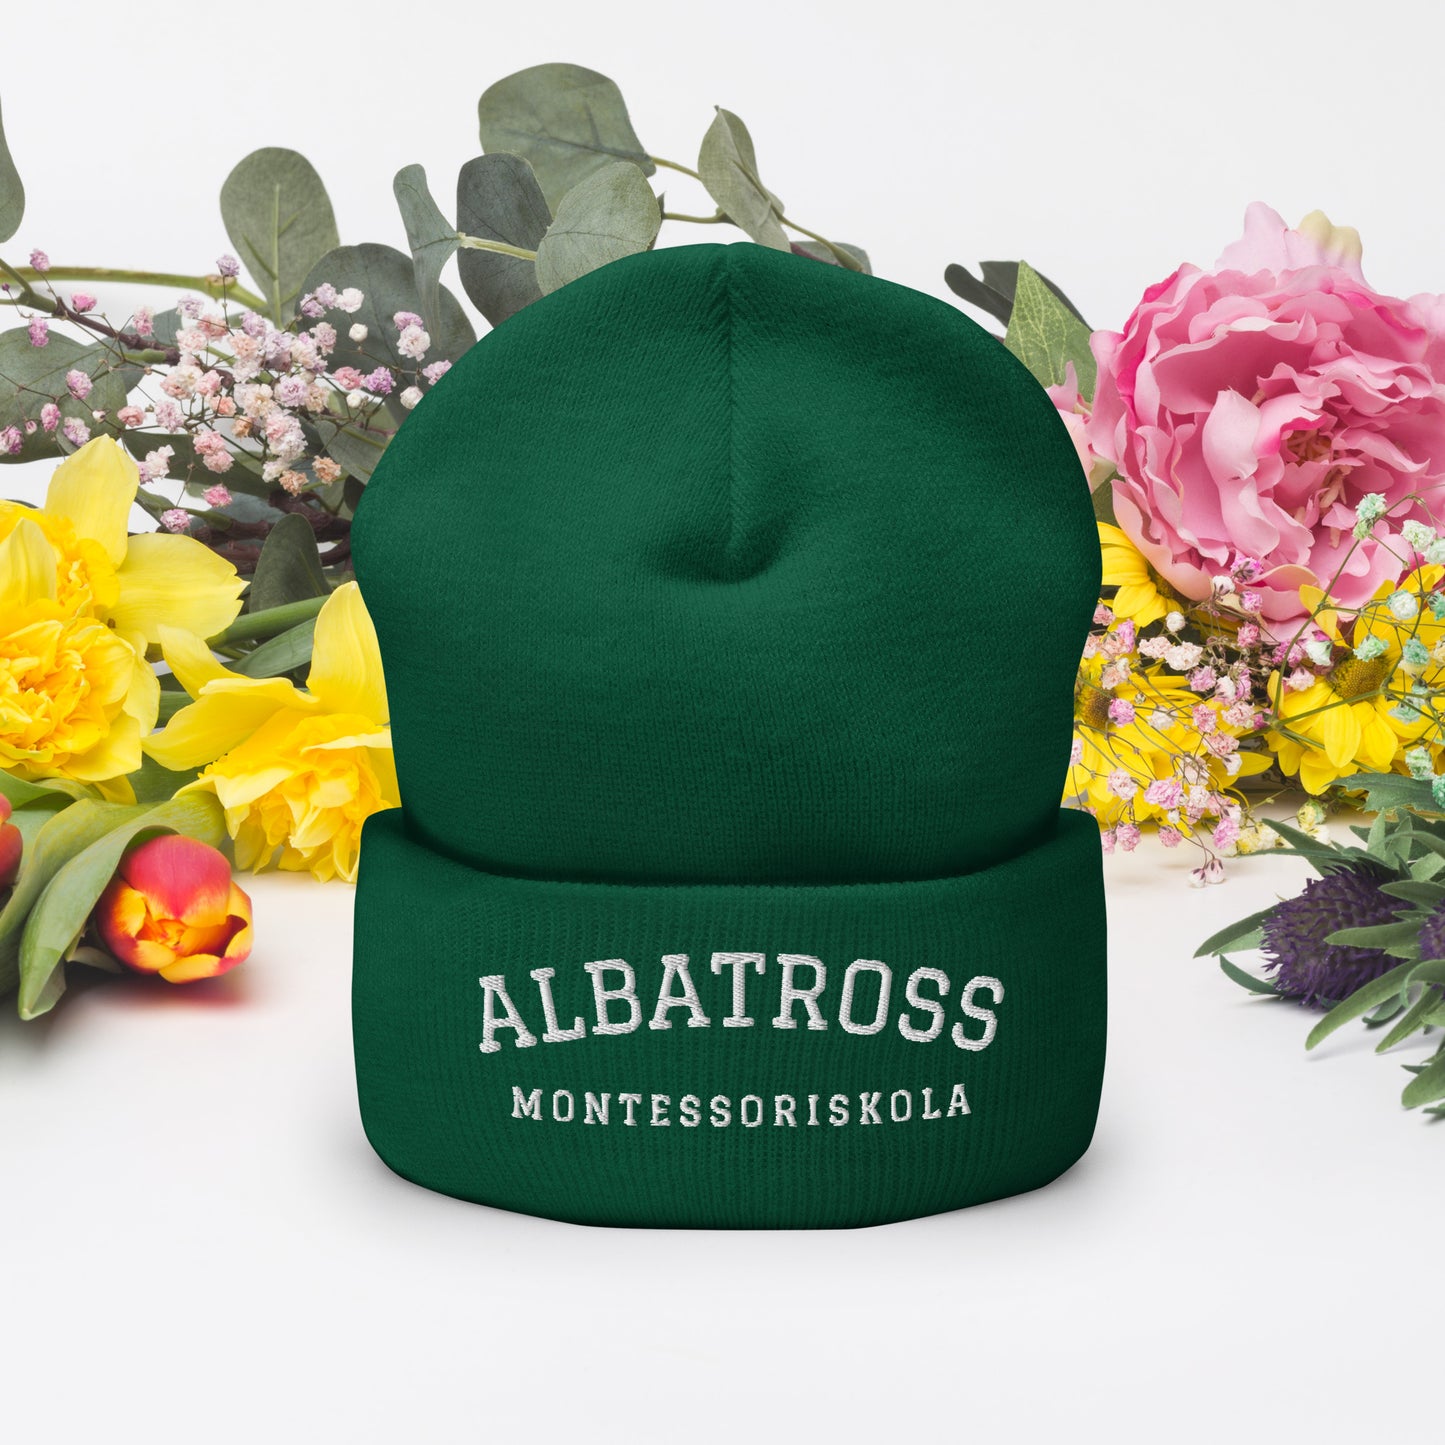 ALBATROSS MONTESORISSKOLA - Broderad mössa - 9 färger